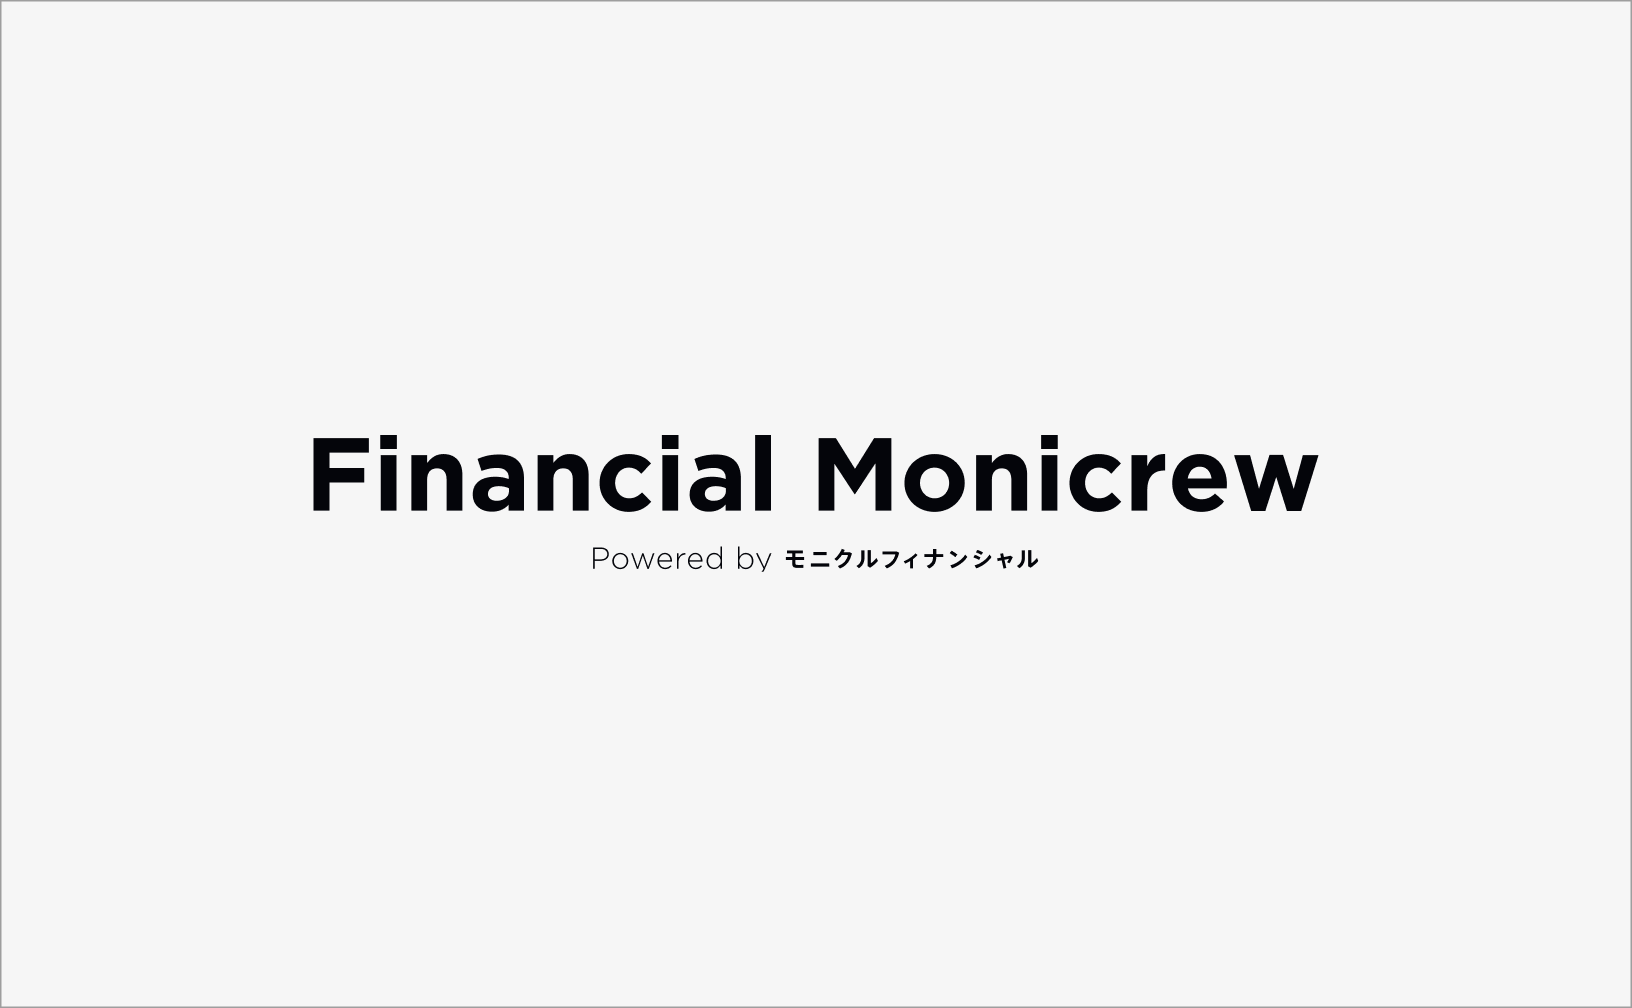 「ワンマイルPRESS」から「Financial Monicrew」へ名称変更しました